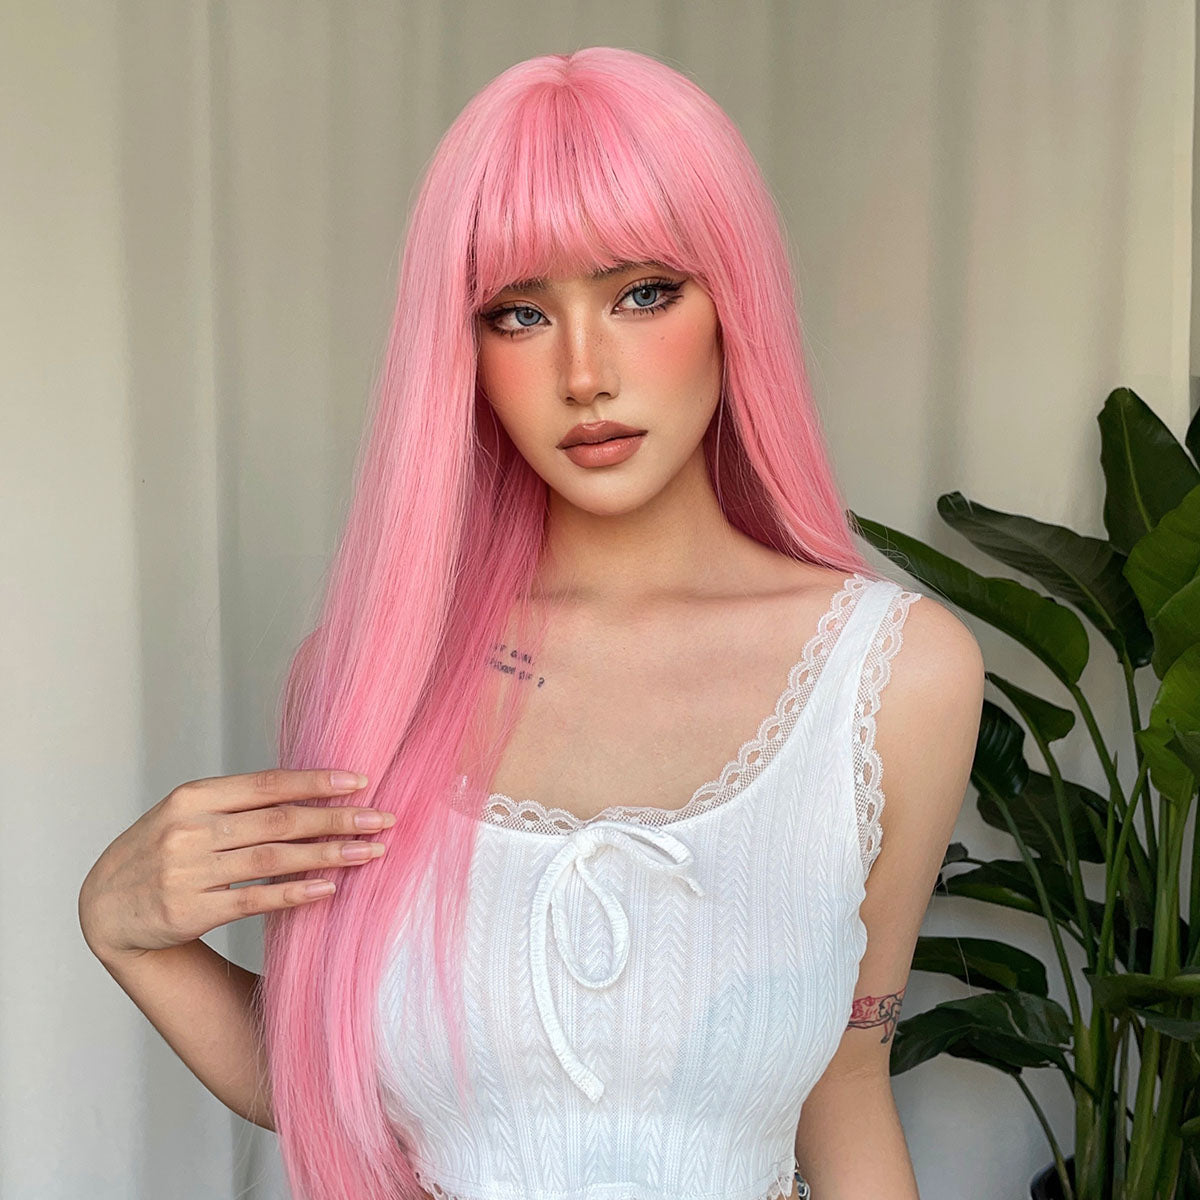 【YW17】28 Inch pink Long Wavy Wigs for Women WL1092-2